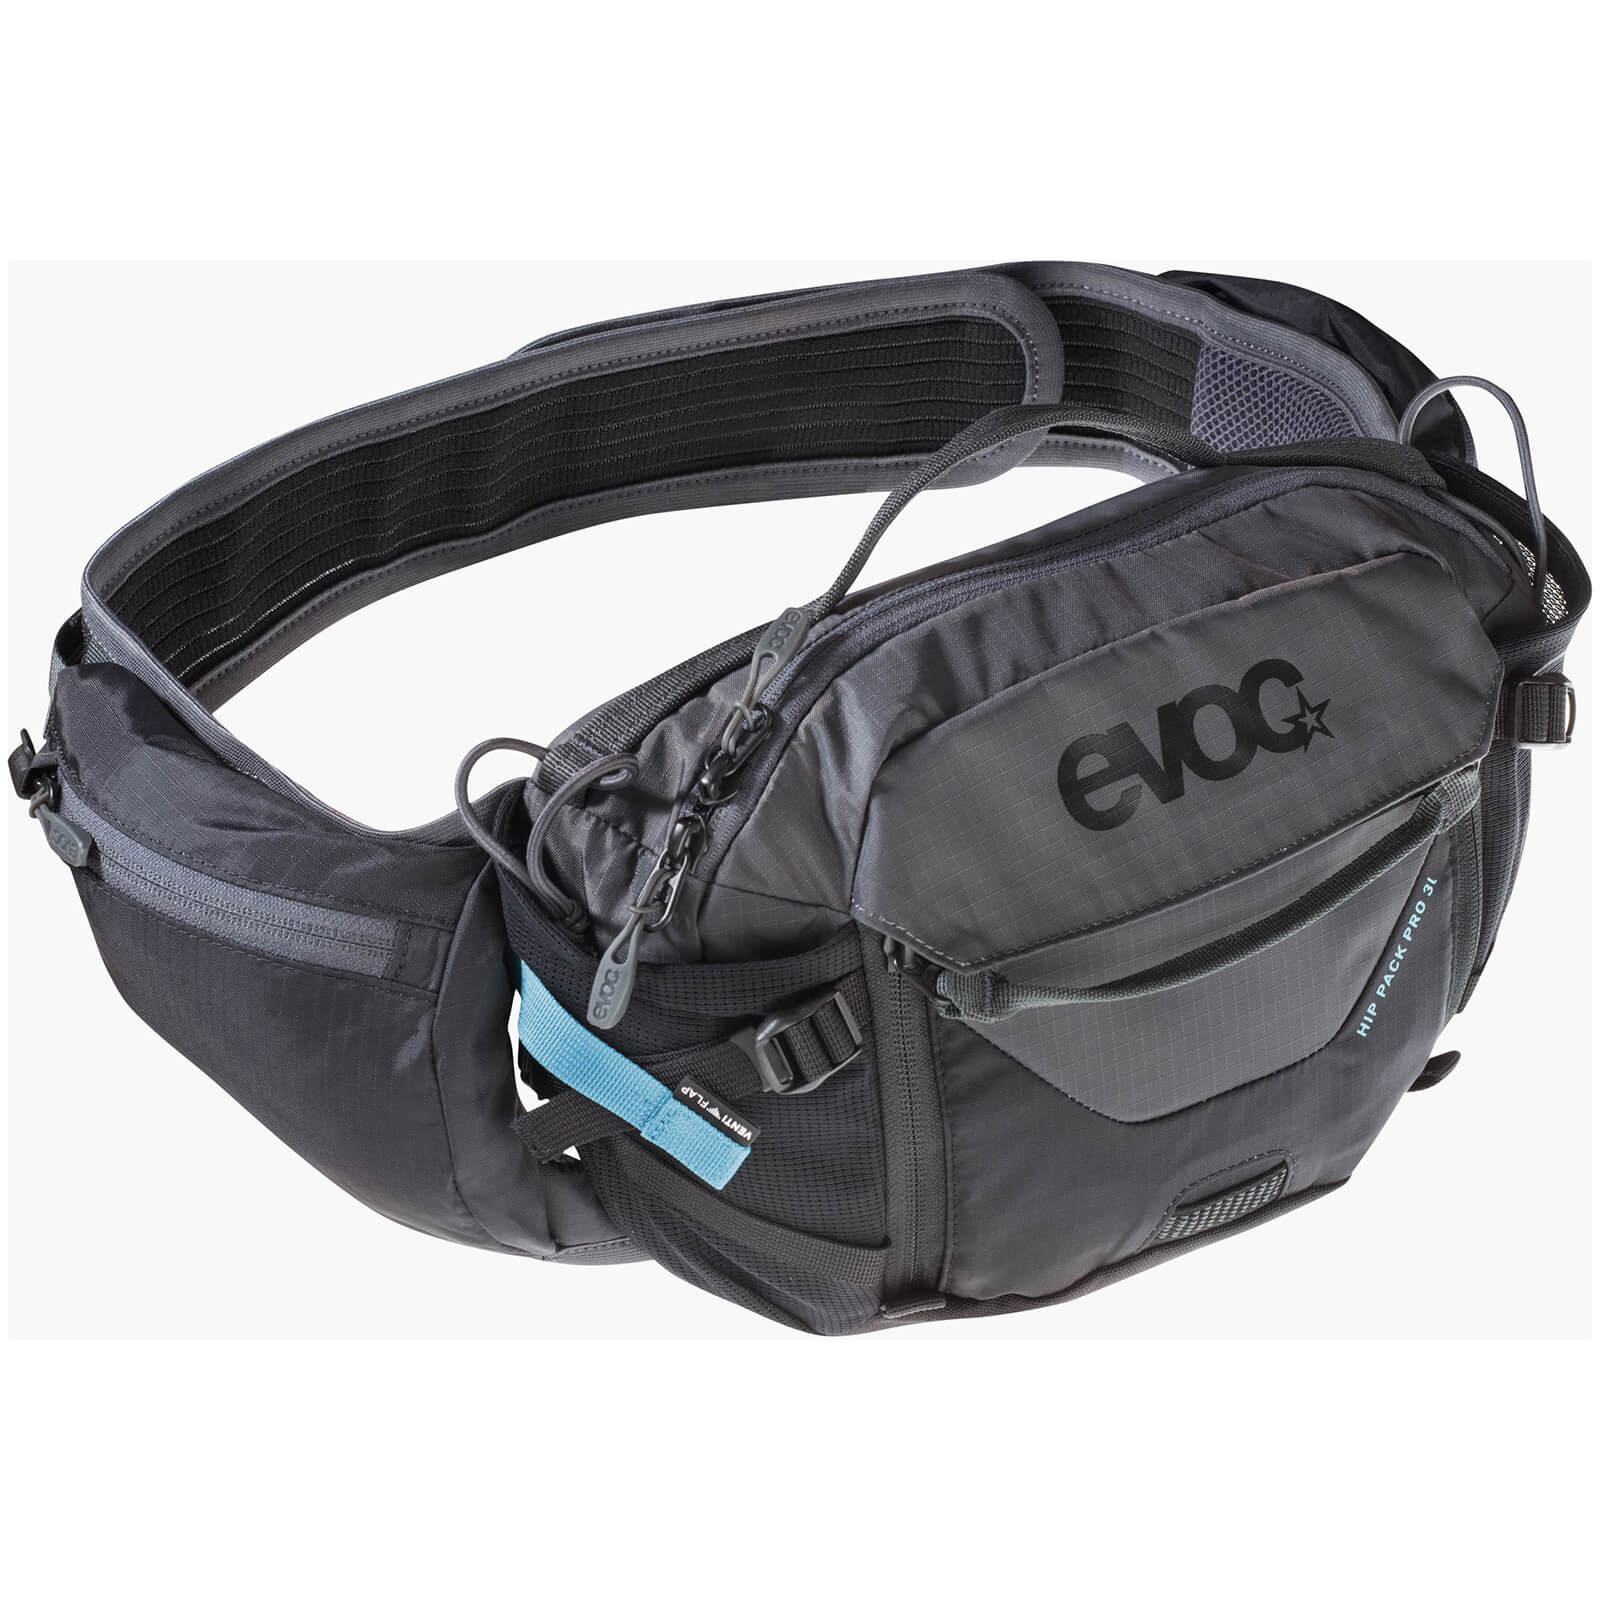 Image of Evoc 3L Hip Pack Pro Hydration Pack + 1.5L Bladder - Black/Carbon Grey